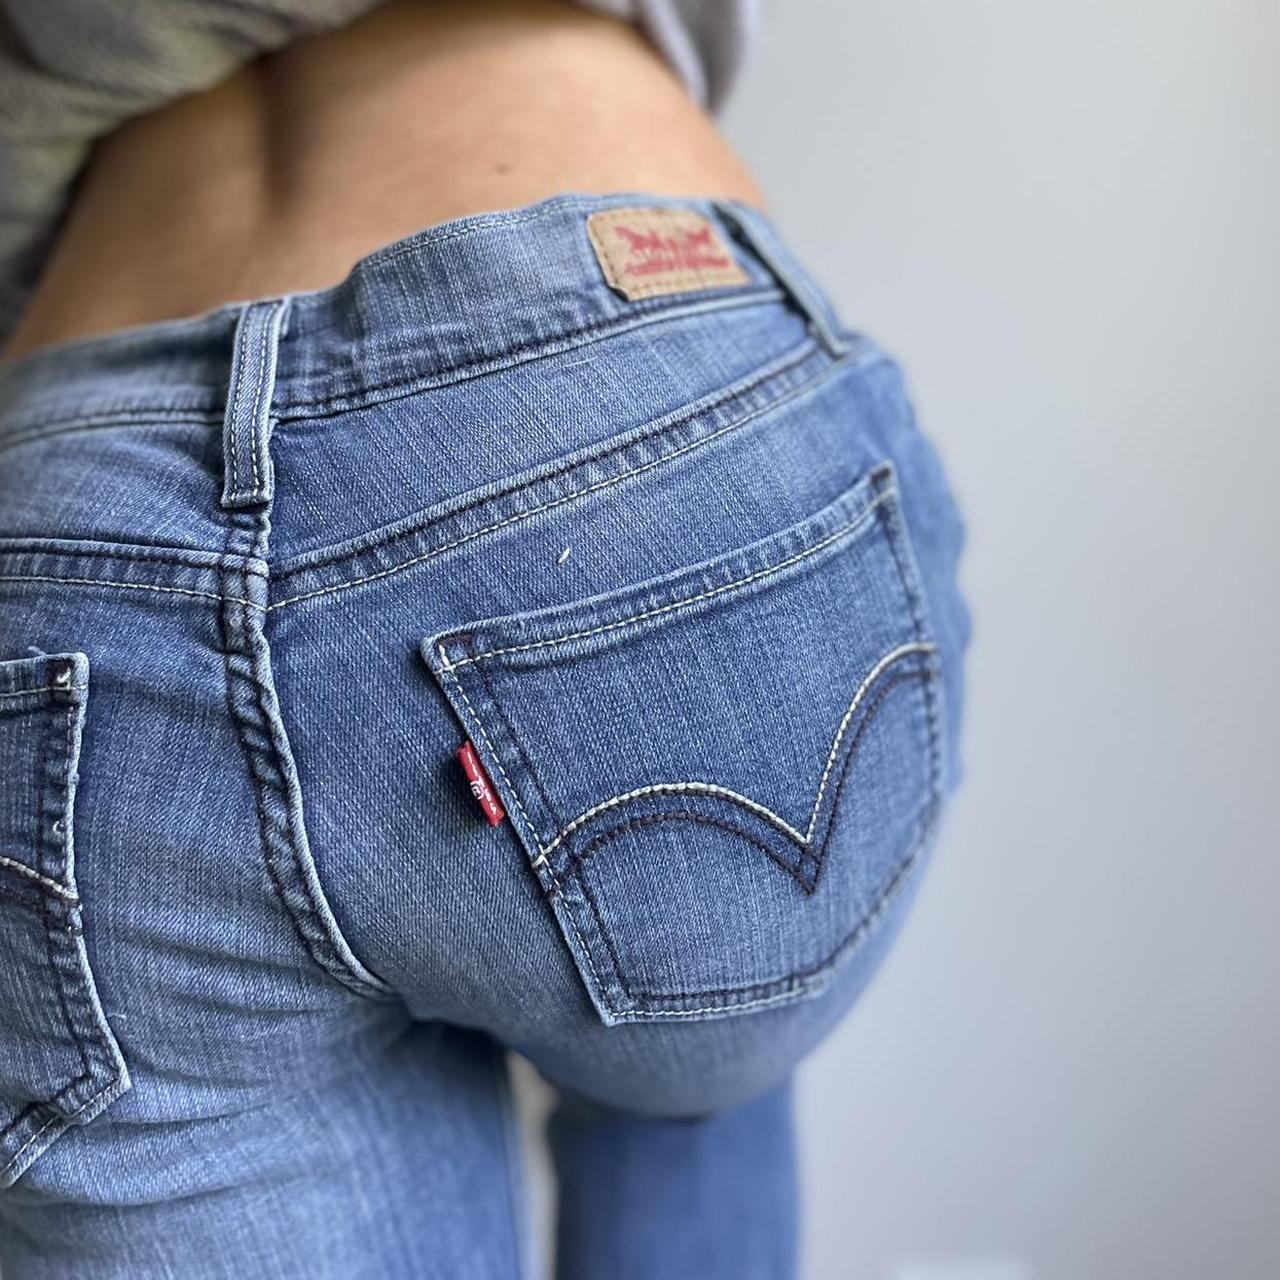 Frastøde Dovenskab Trække på Levi's Women's Blue Jeans | Depop